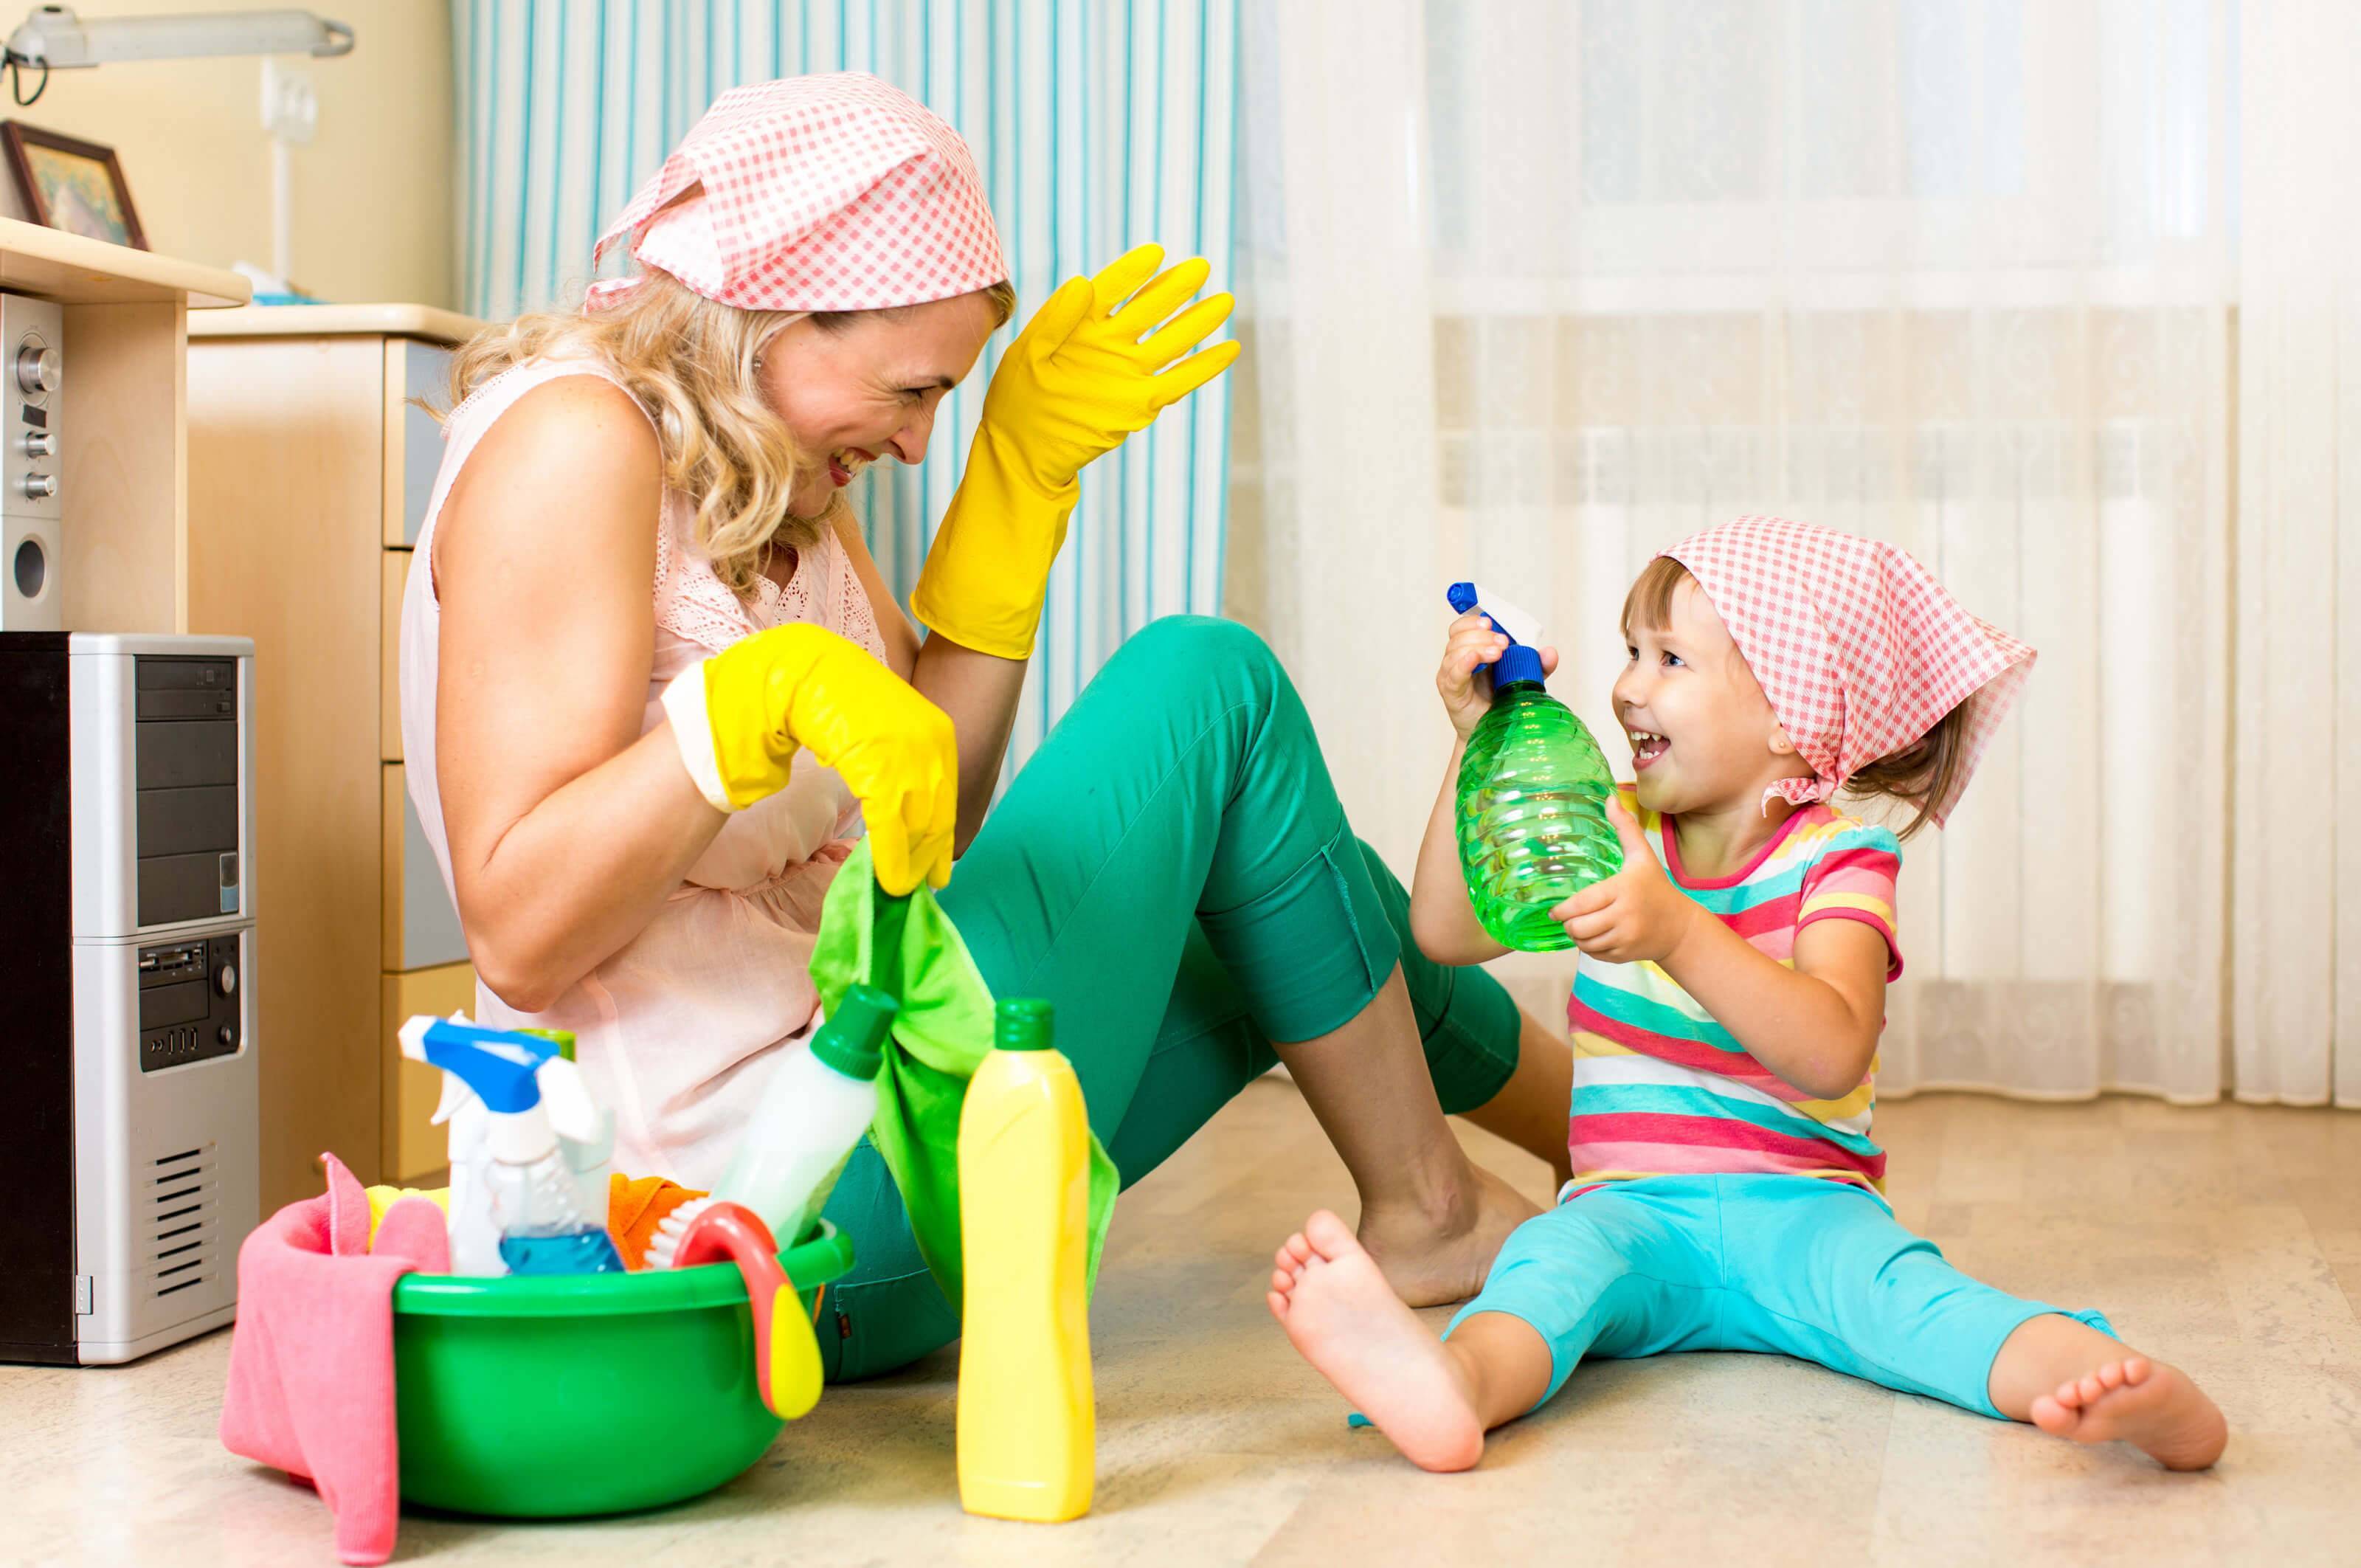 Как работать дома, если у вас маленькие дети. 10 советов от опытных родителей-фрилансеров | правмир